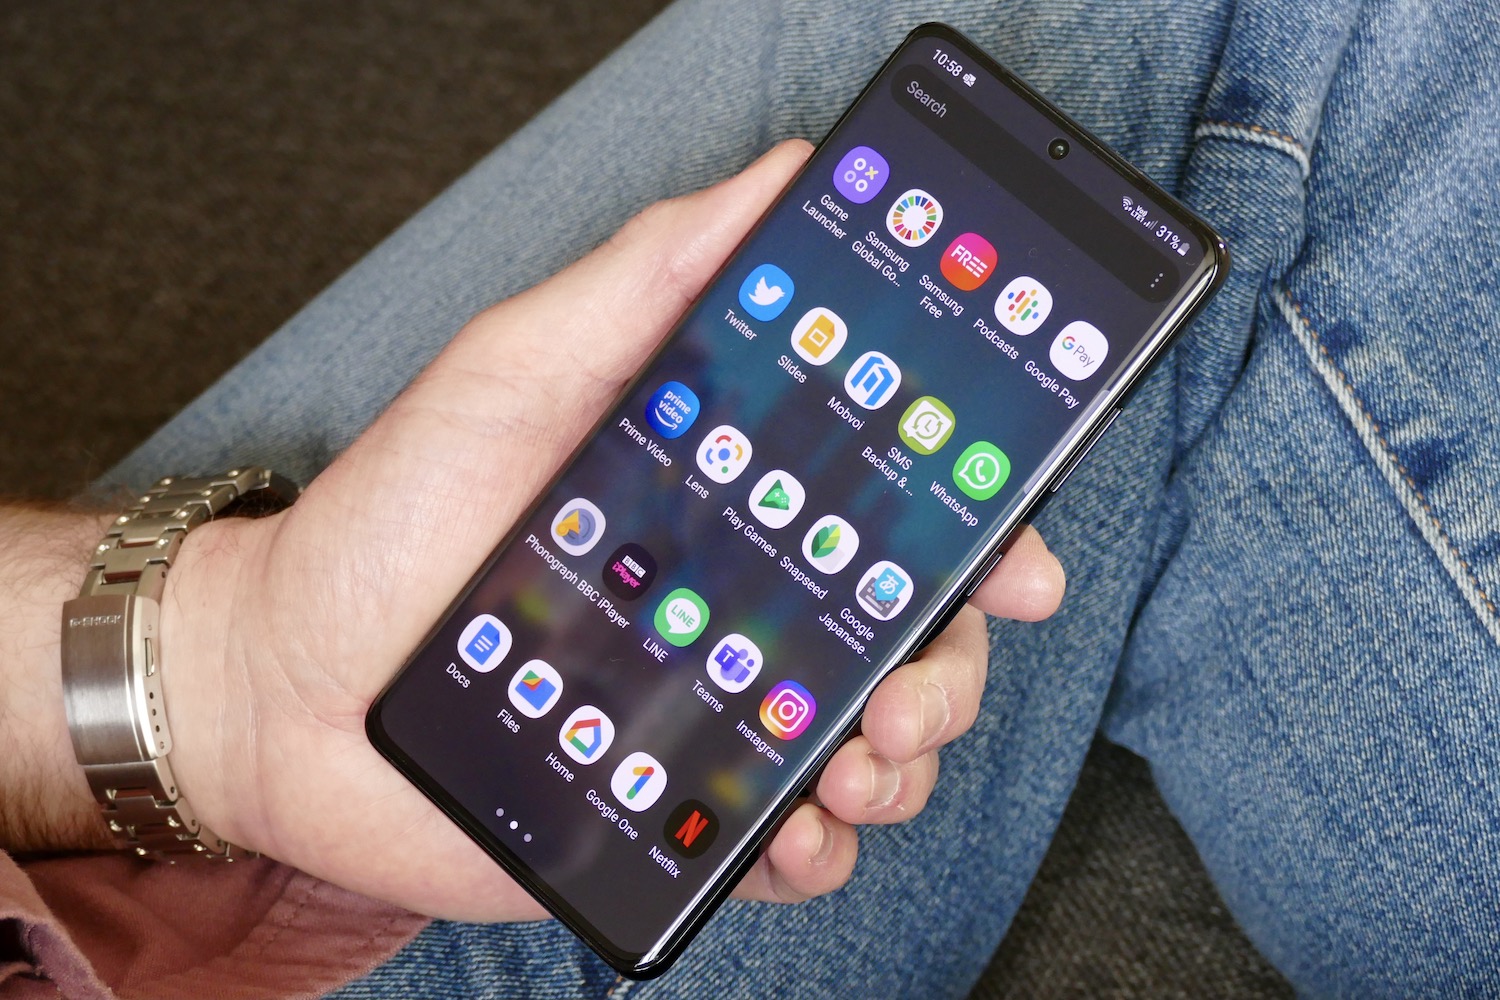 Bạn sẽ phải bất ngờ trước những đánh giá tích cực về Samsung Galaxy S21 Ultra 5G. Không chỉ sở hữu thiết kế tinh tế, tính năng vượt trội, chiếc điện thoại này còn mang lại một trải nghiệm đắt giá mà ít sản phẩm nào có thể sánh được. Hãy cùng khám phá ngay để trải nghiệm sự tuyệt vời của Samsung Galaxy S21 Ultra 5G!